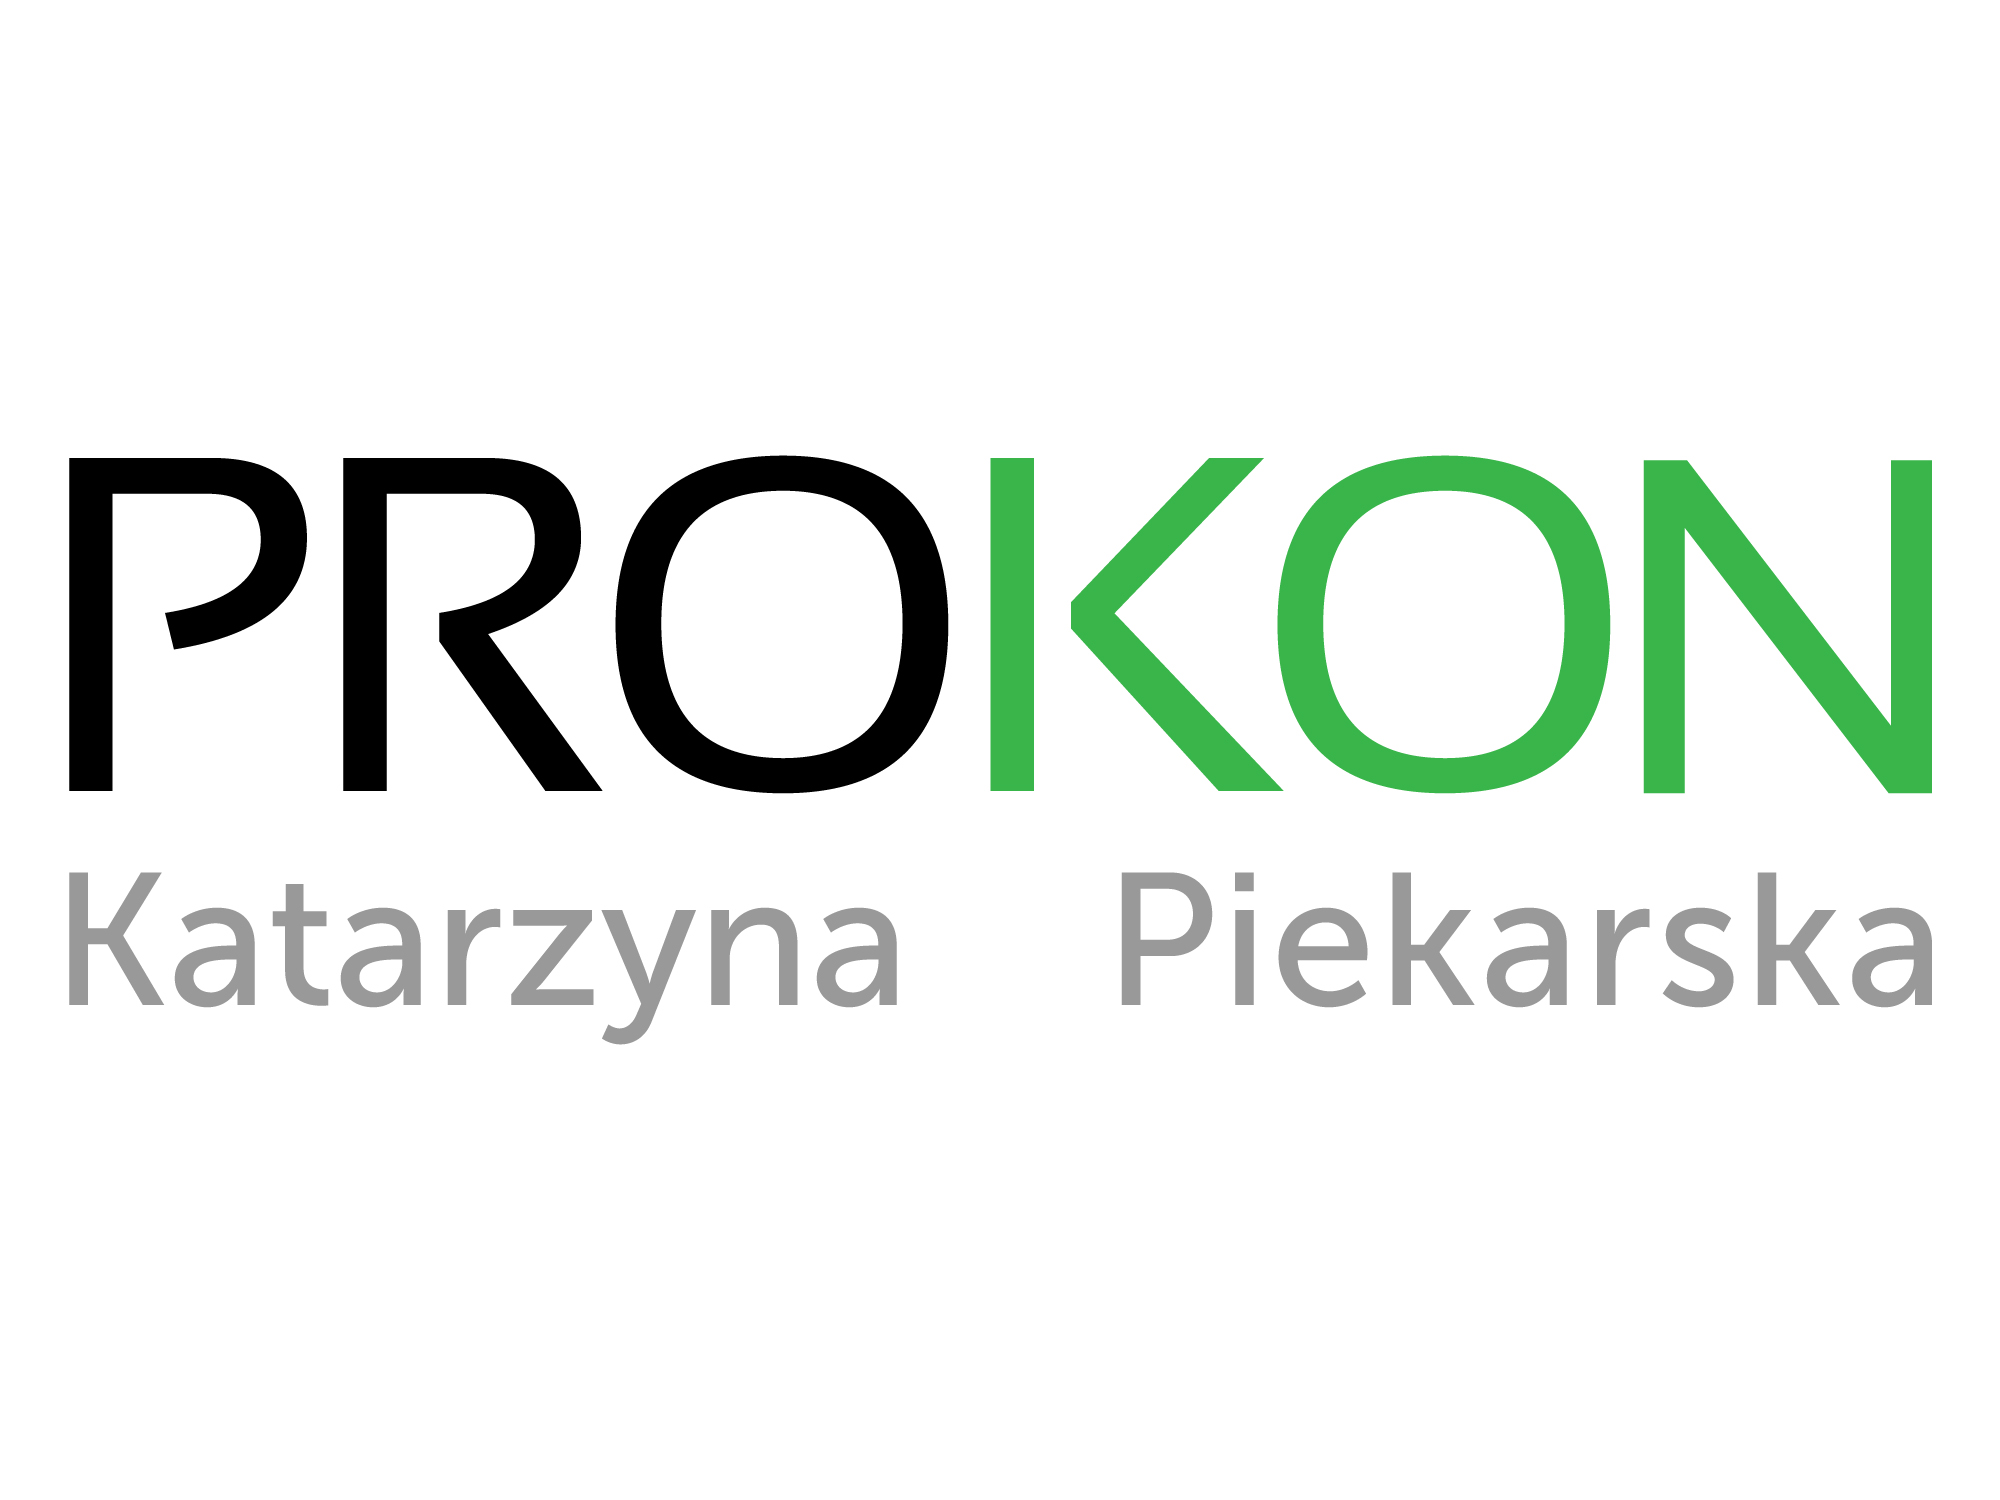 PROKON Katarzyna Piekarska - logo